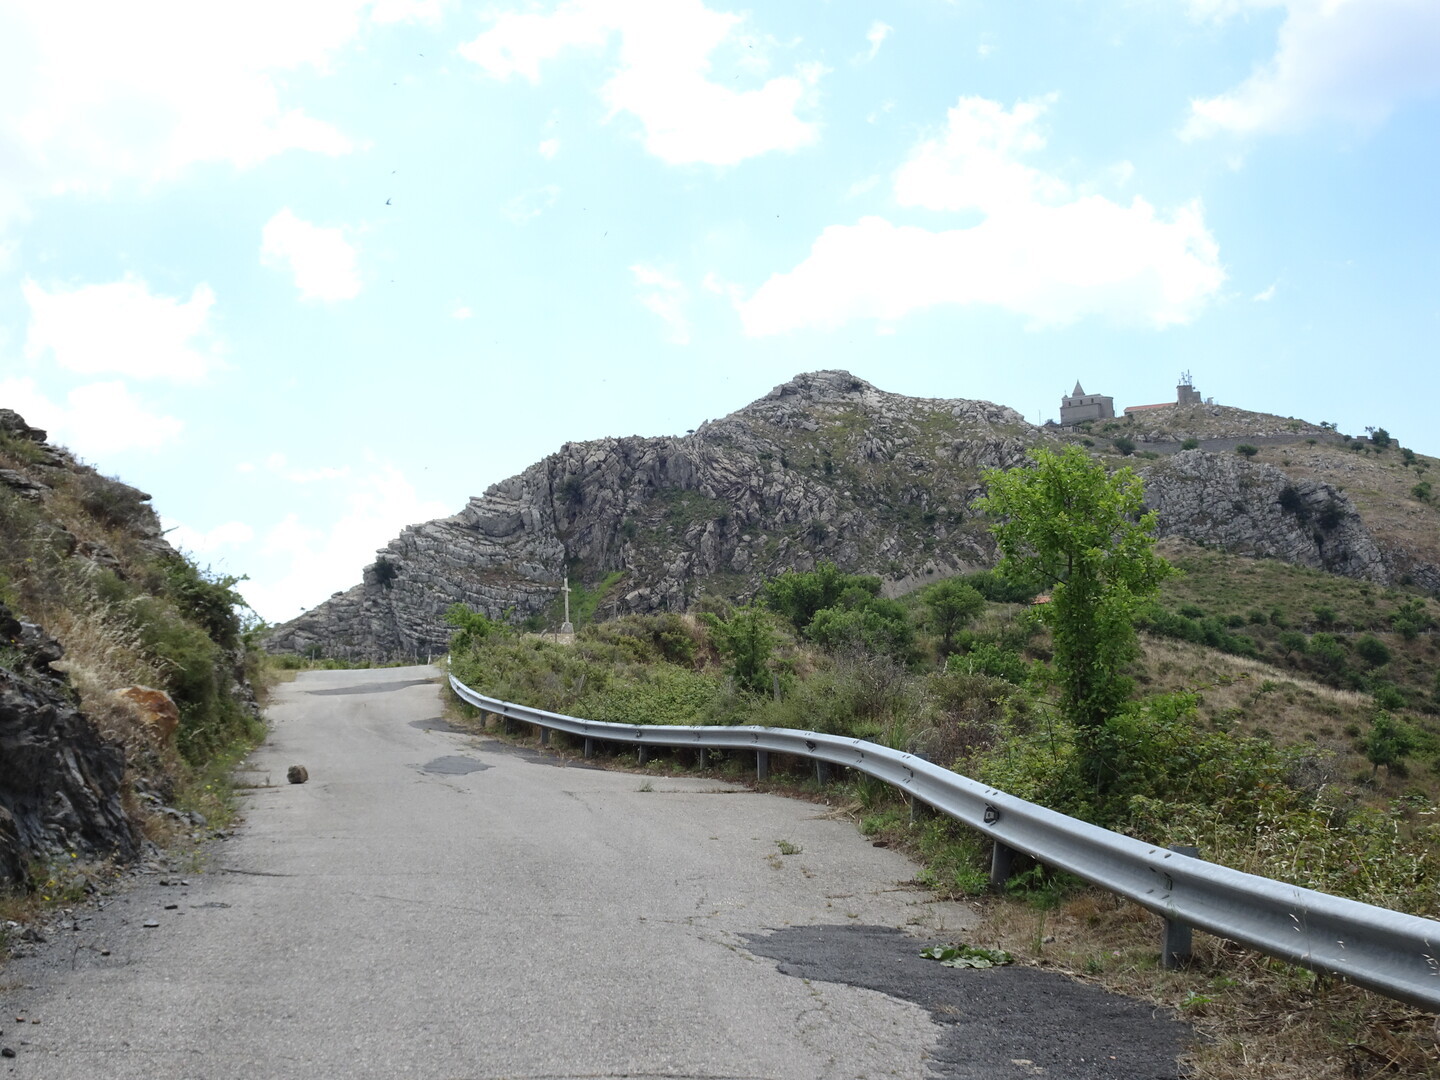 Das Santuario, kurz nach Zusammenschluss der Straßen aus Roccafiorita und Graniti